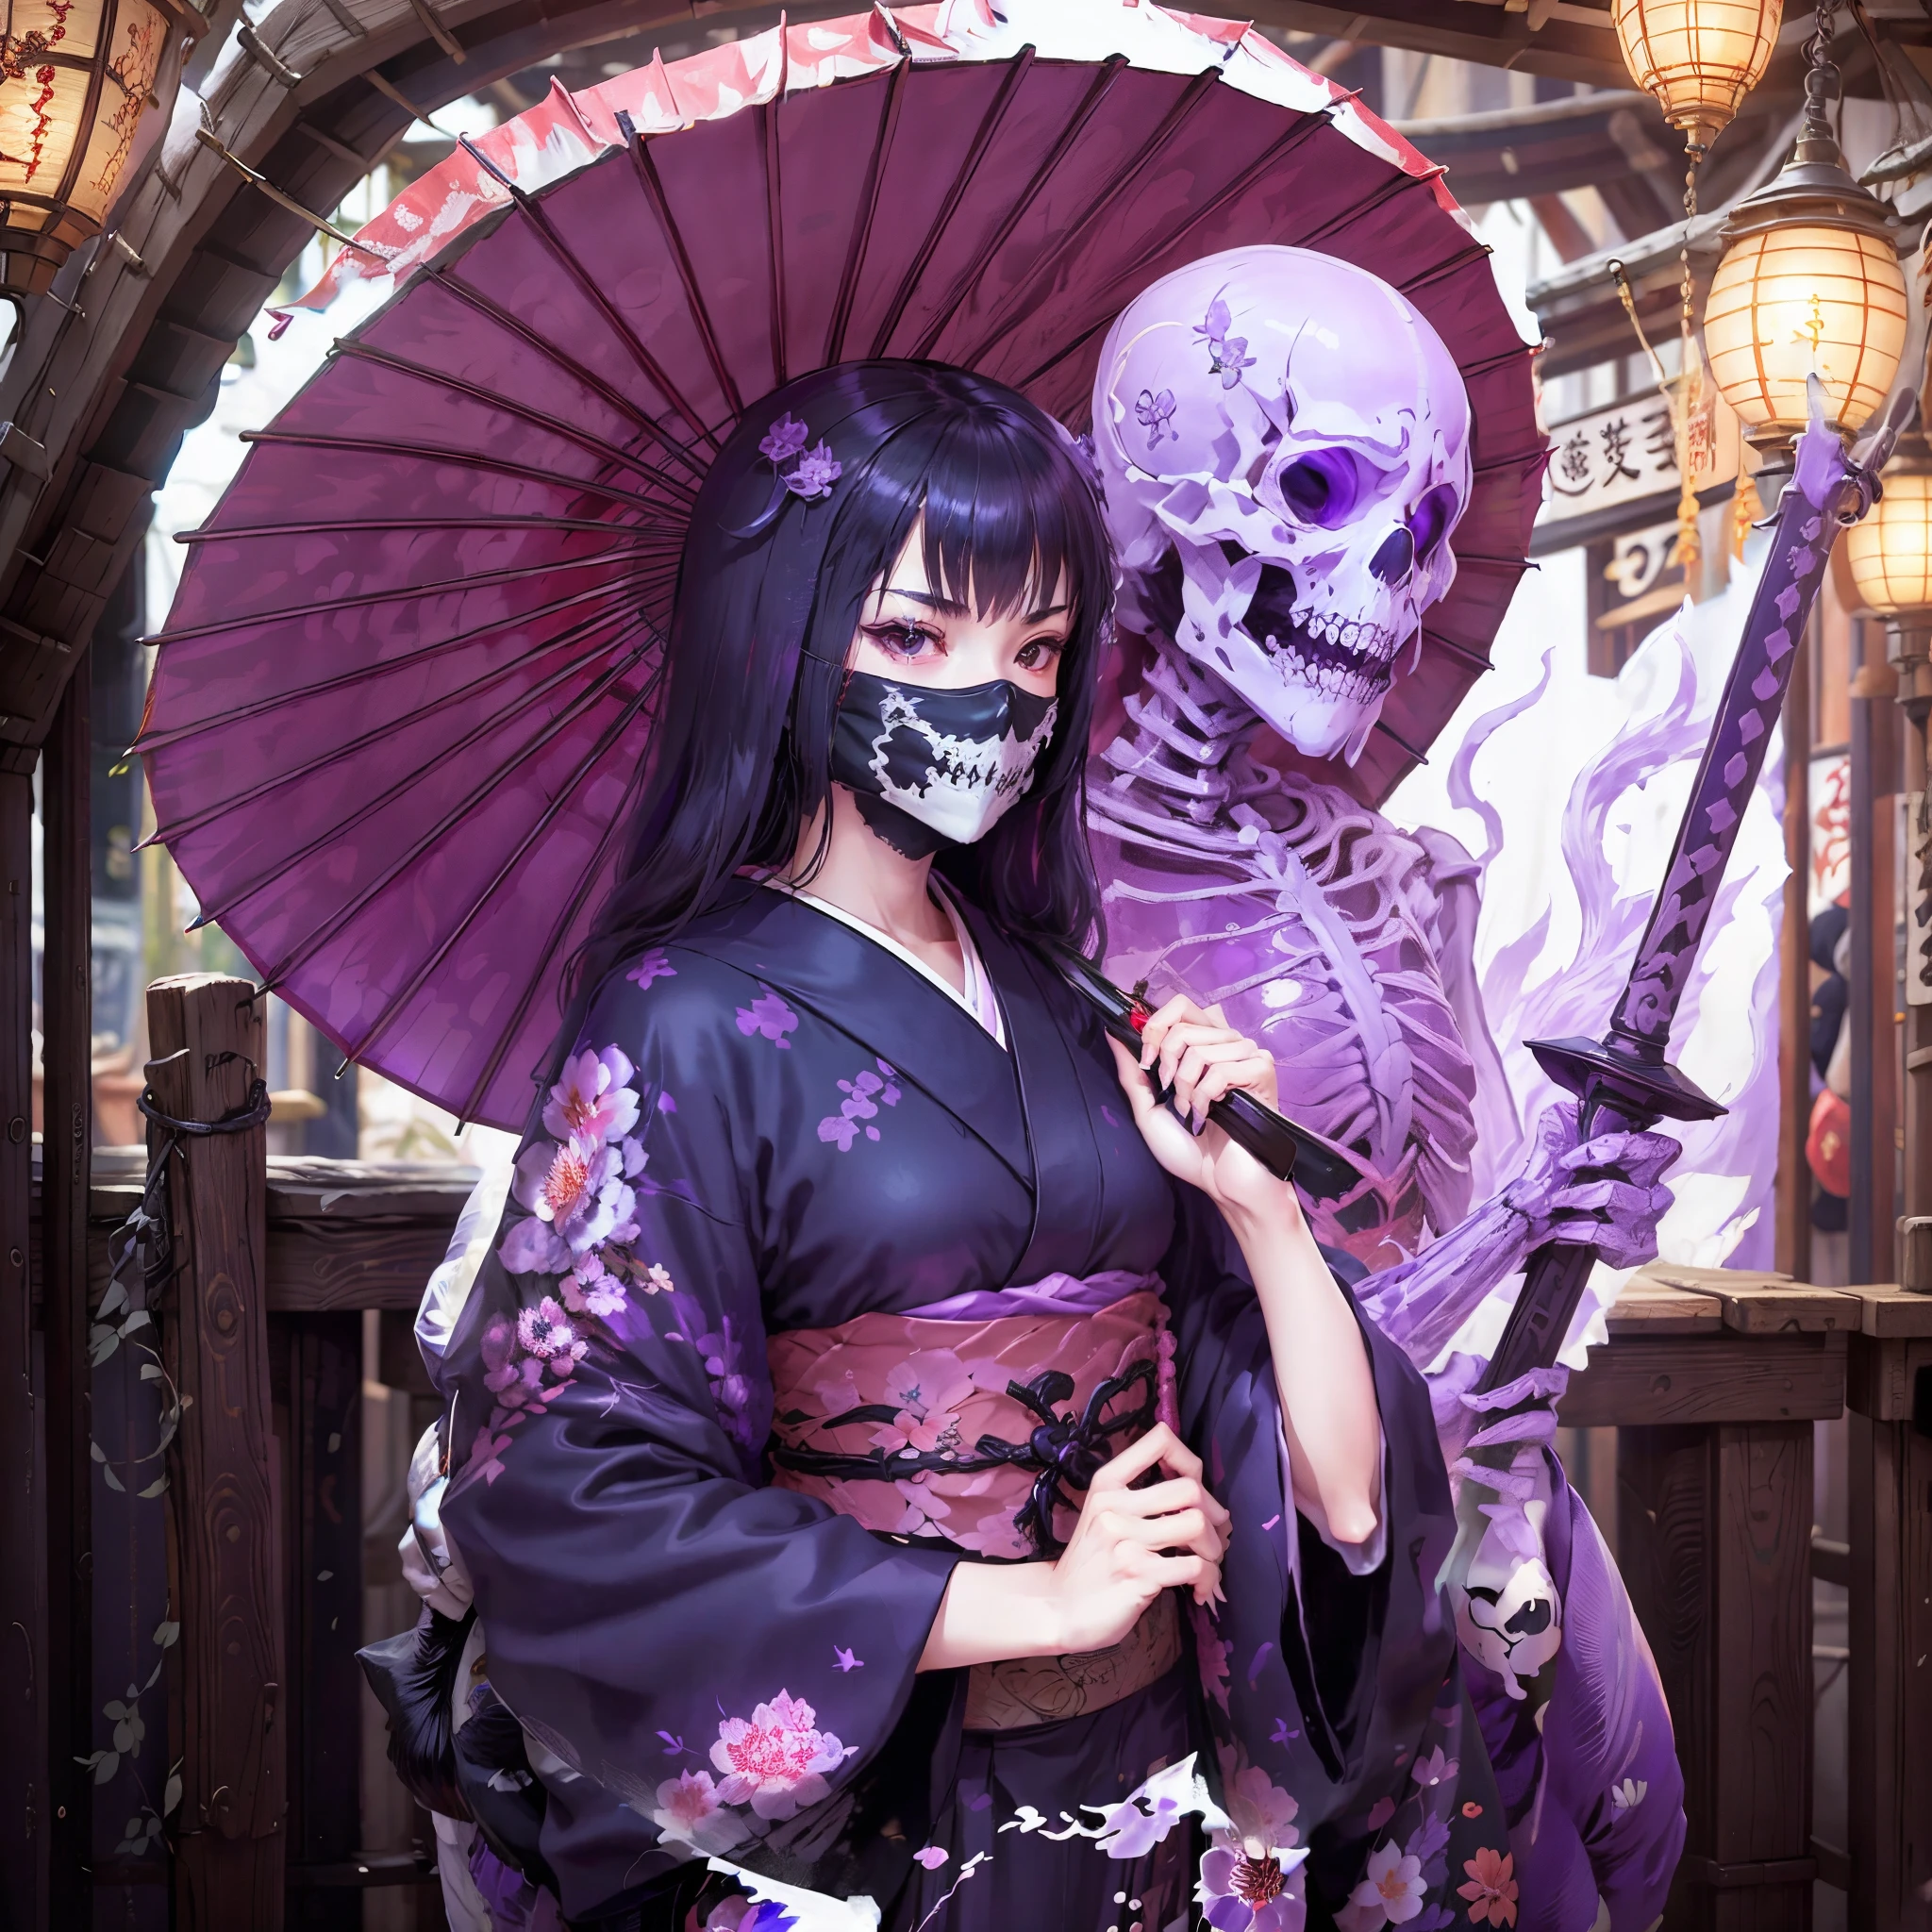 穿着和服的女孩. 她举起剑. 日本伞. 穿骨头. 遮住嘴巴的骷髅形面具. 一具紫色半透明的骷髅出现在女孩身后. 紫色火焰.